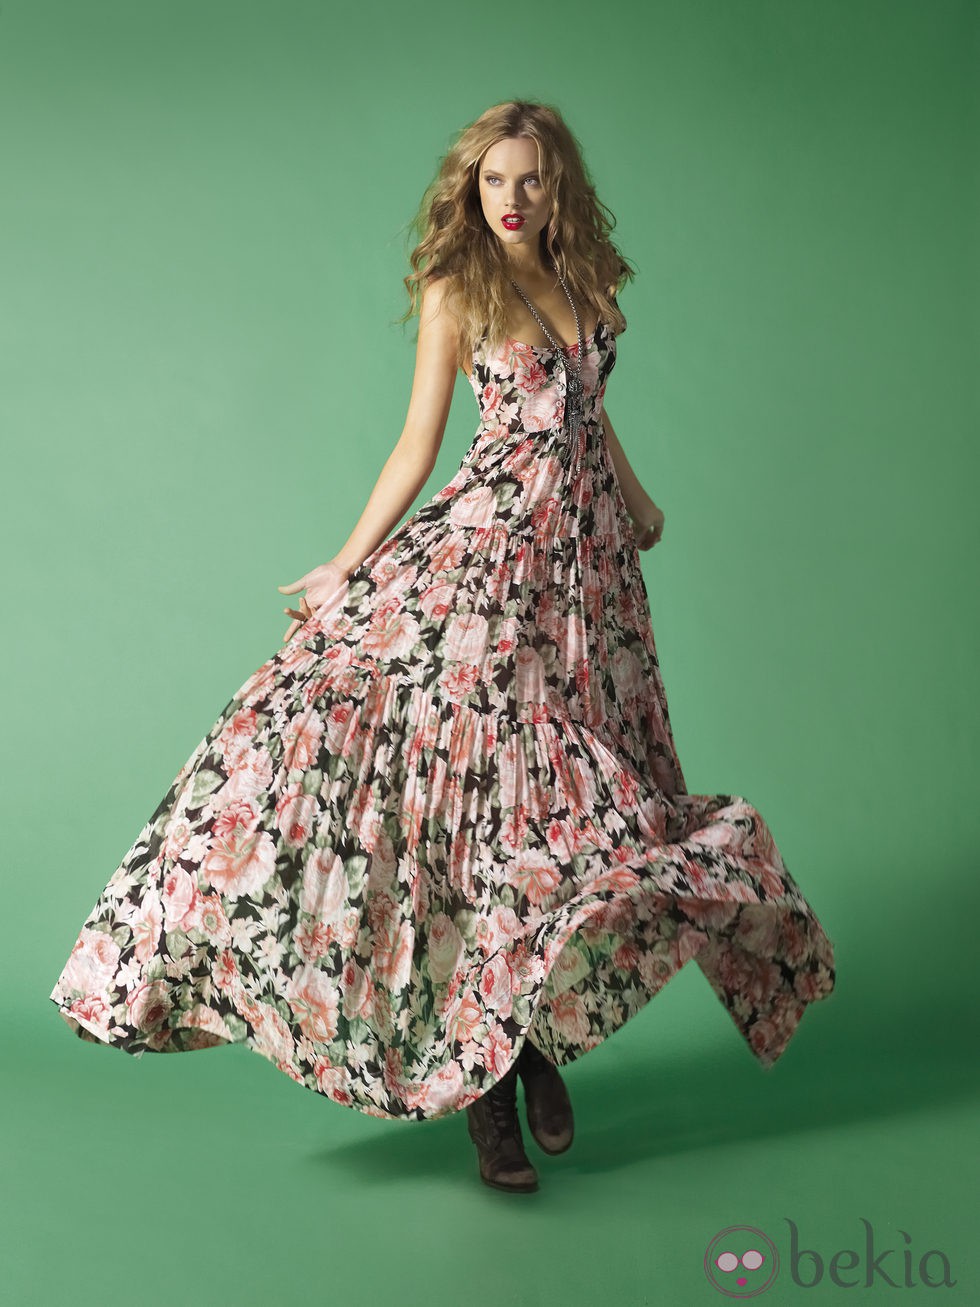 Vestido vaporoso largo de la nueva colección de Etxar&Panno primavera/verano 2012